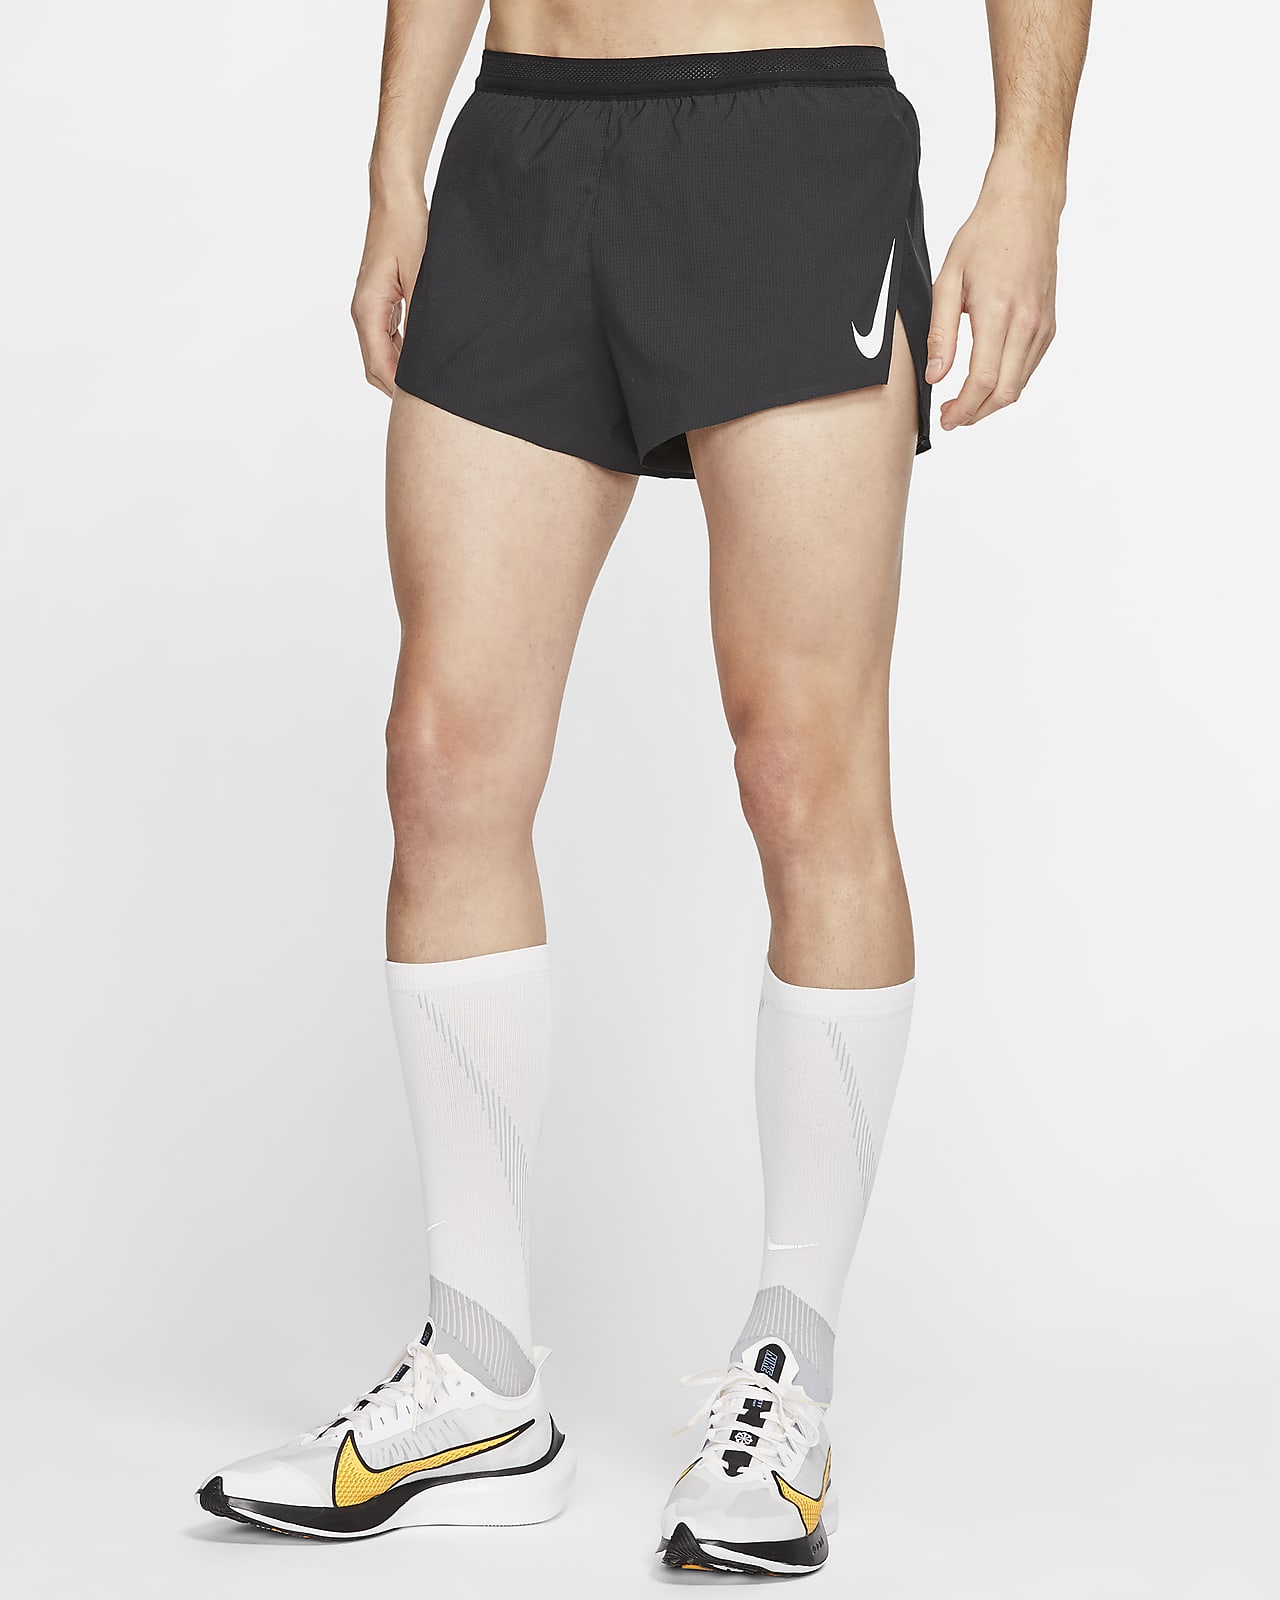 Nike AeroSwift Pantalons curts amb eslip incorporat de 5 cm de competició - Home